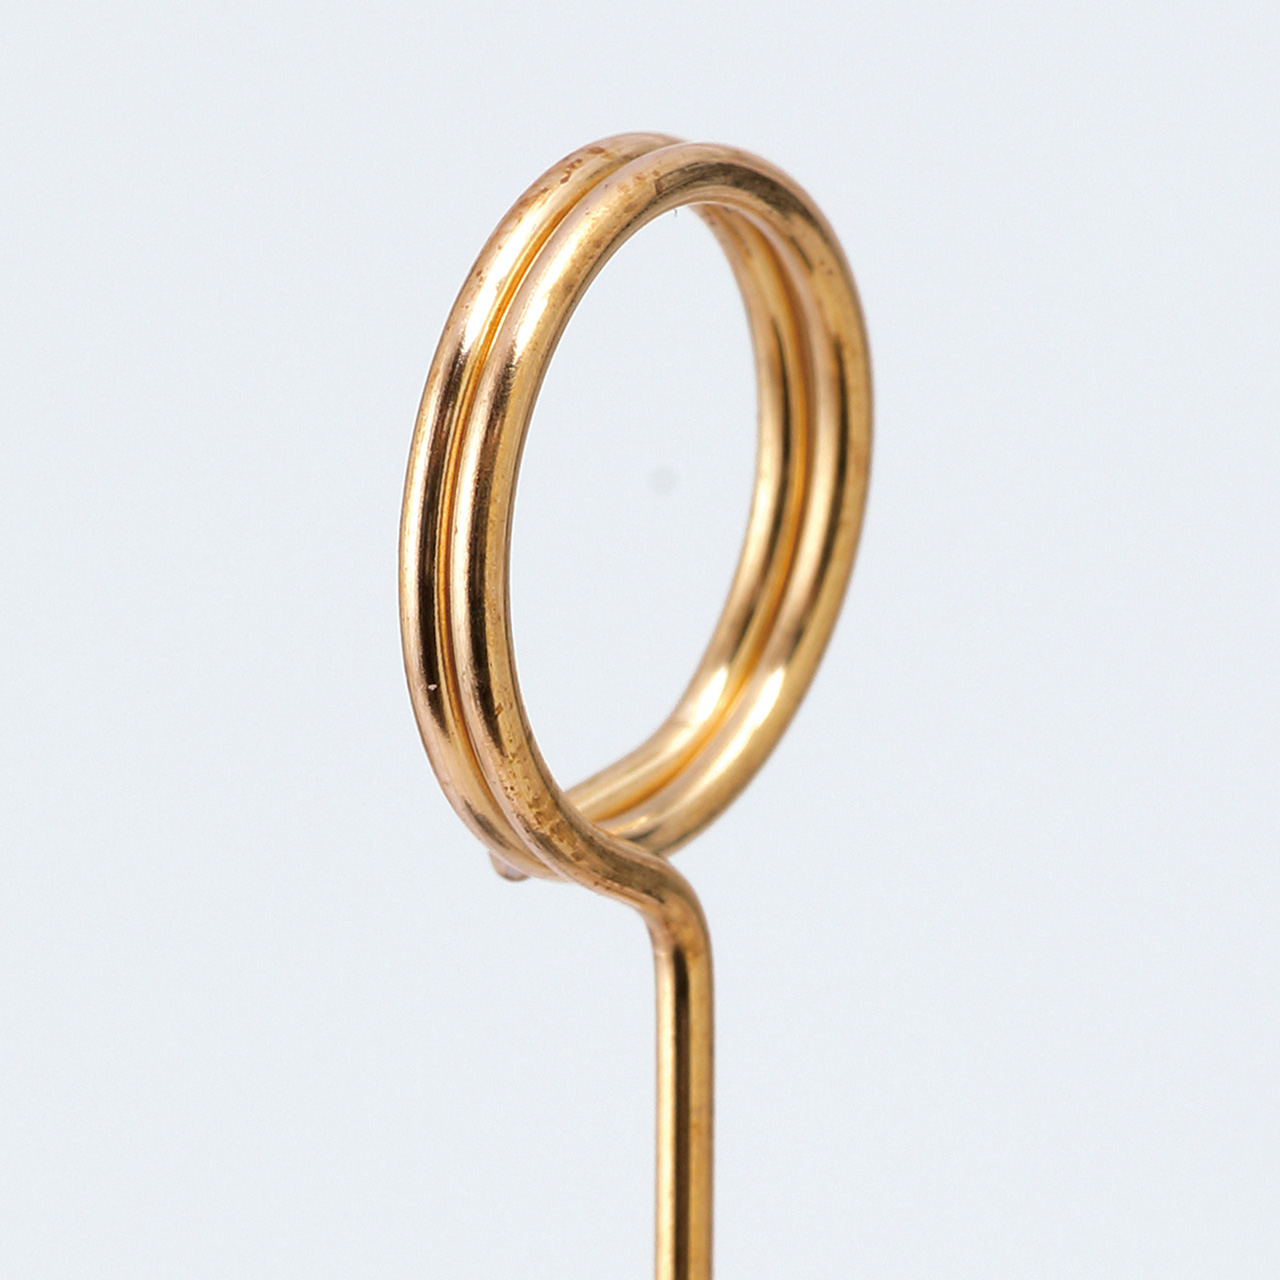 マイフラ】 通販/ワイヤークリップピック ゴールド 20本入 デコレーション素材 ピック ZP004760(長さ 約30cm ゴールド):  デコレーション素材/全国にMAGIQ、花器、花資材などをお届けします。